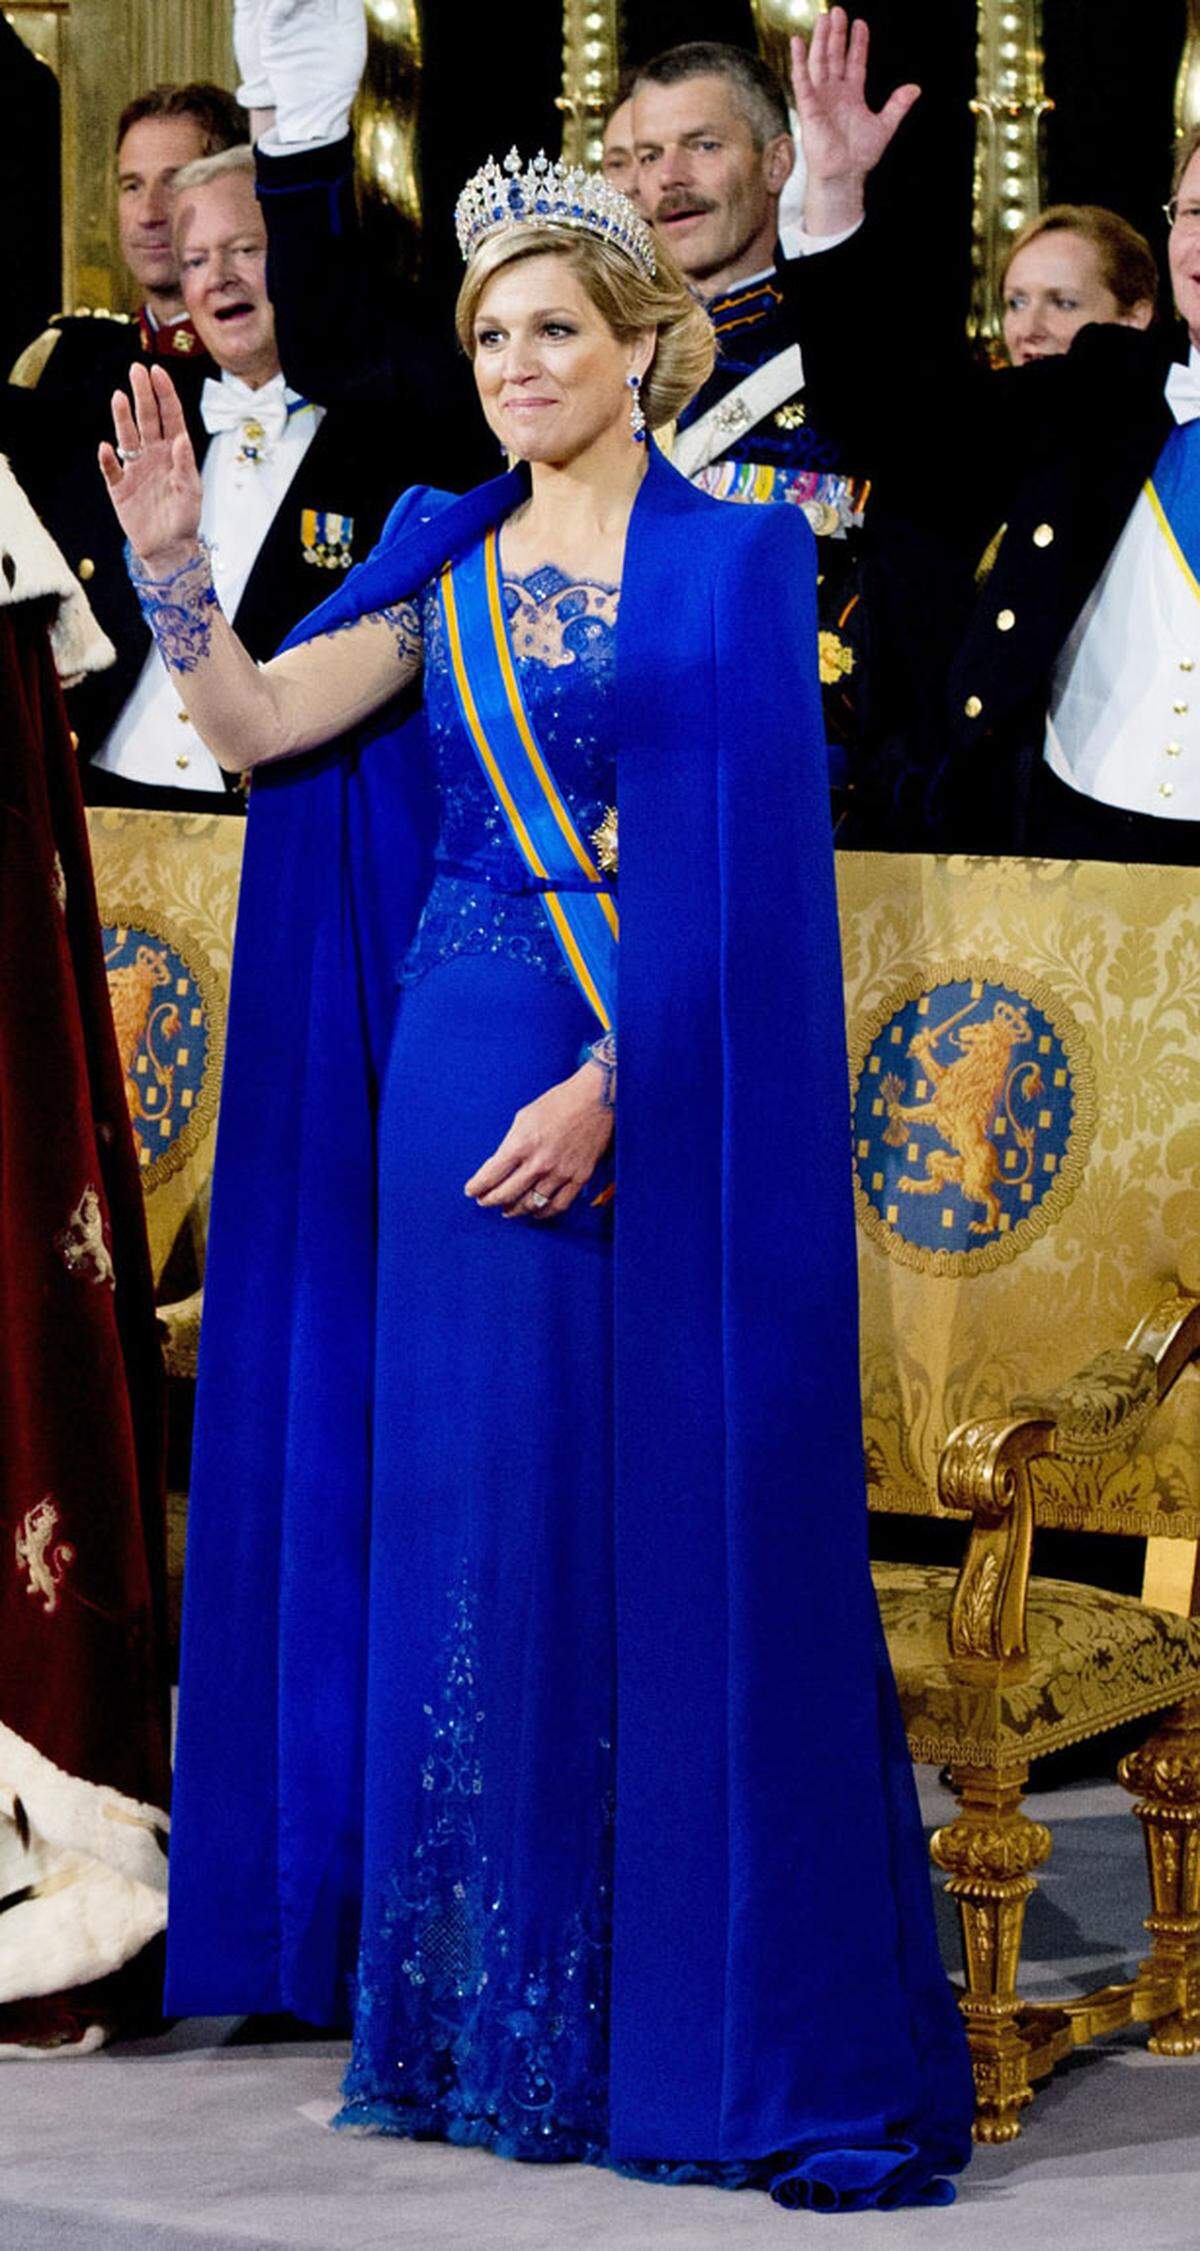 In der Prinzessinnen-Rangliste ist Maxima der Niederlande eigentlich schon fehl am Platz, immerhin wurde Ehemann Willelm-Alexander schon zum König gekrönt.